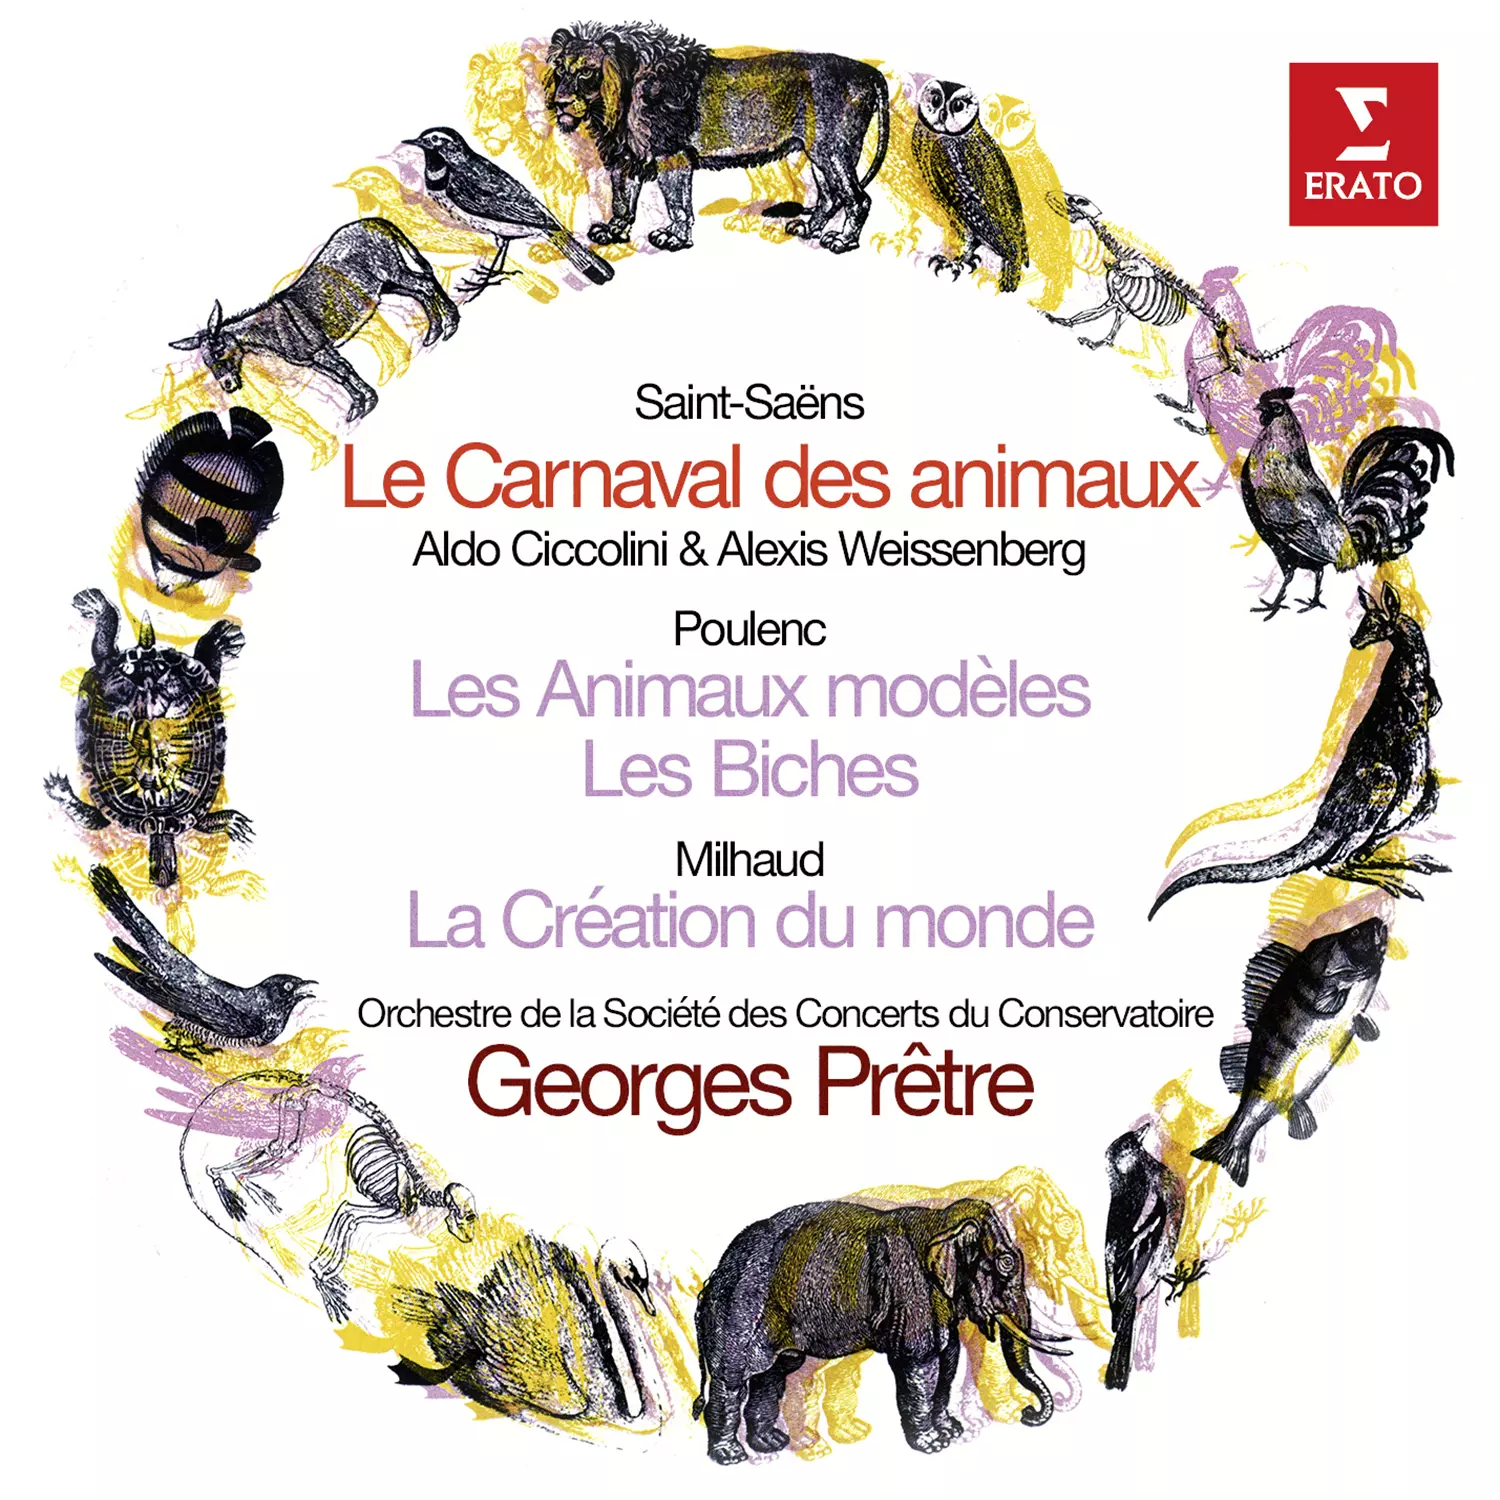 Saint-Saëns: Le carnaval des animaux, Poulenc: Les animaux modèles, Milhaud: La création du monde